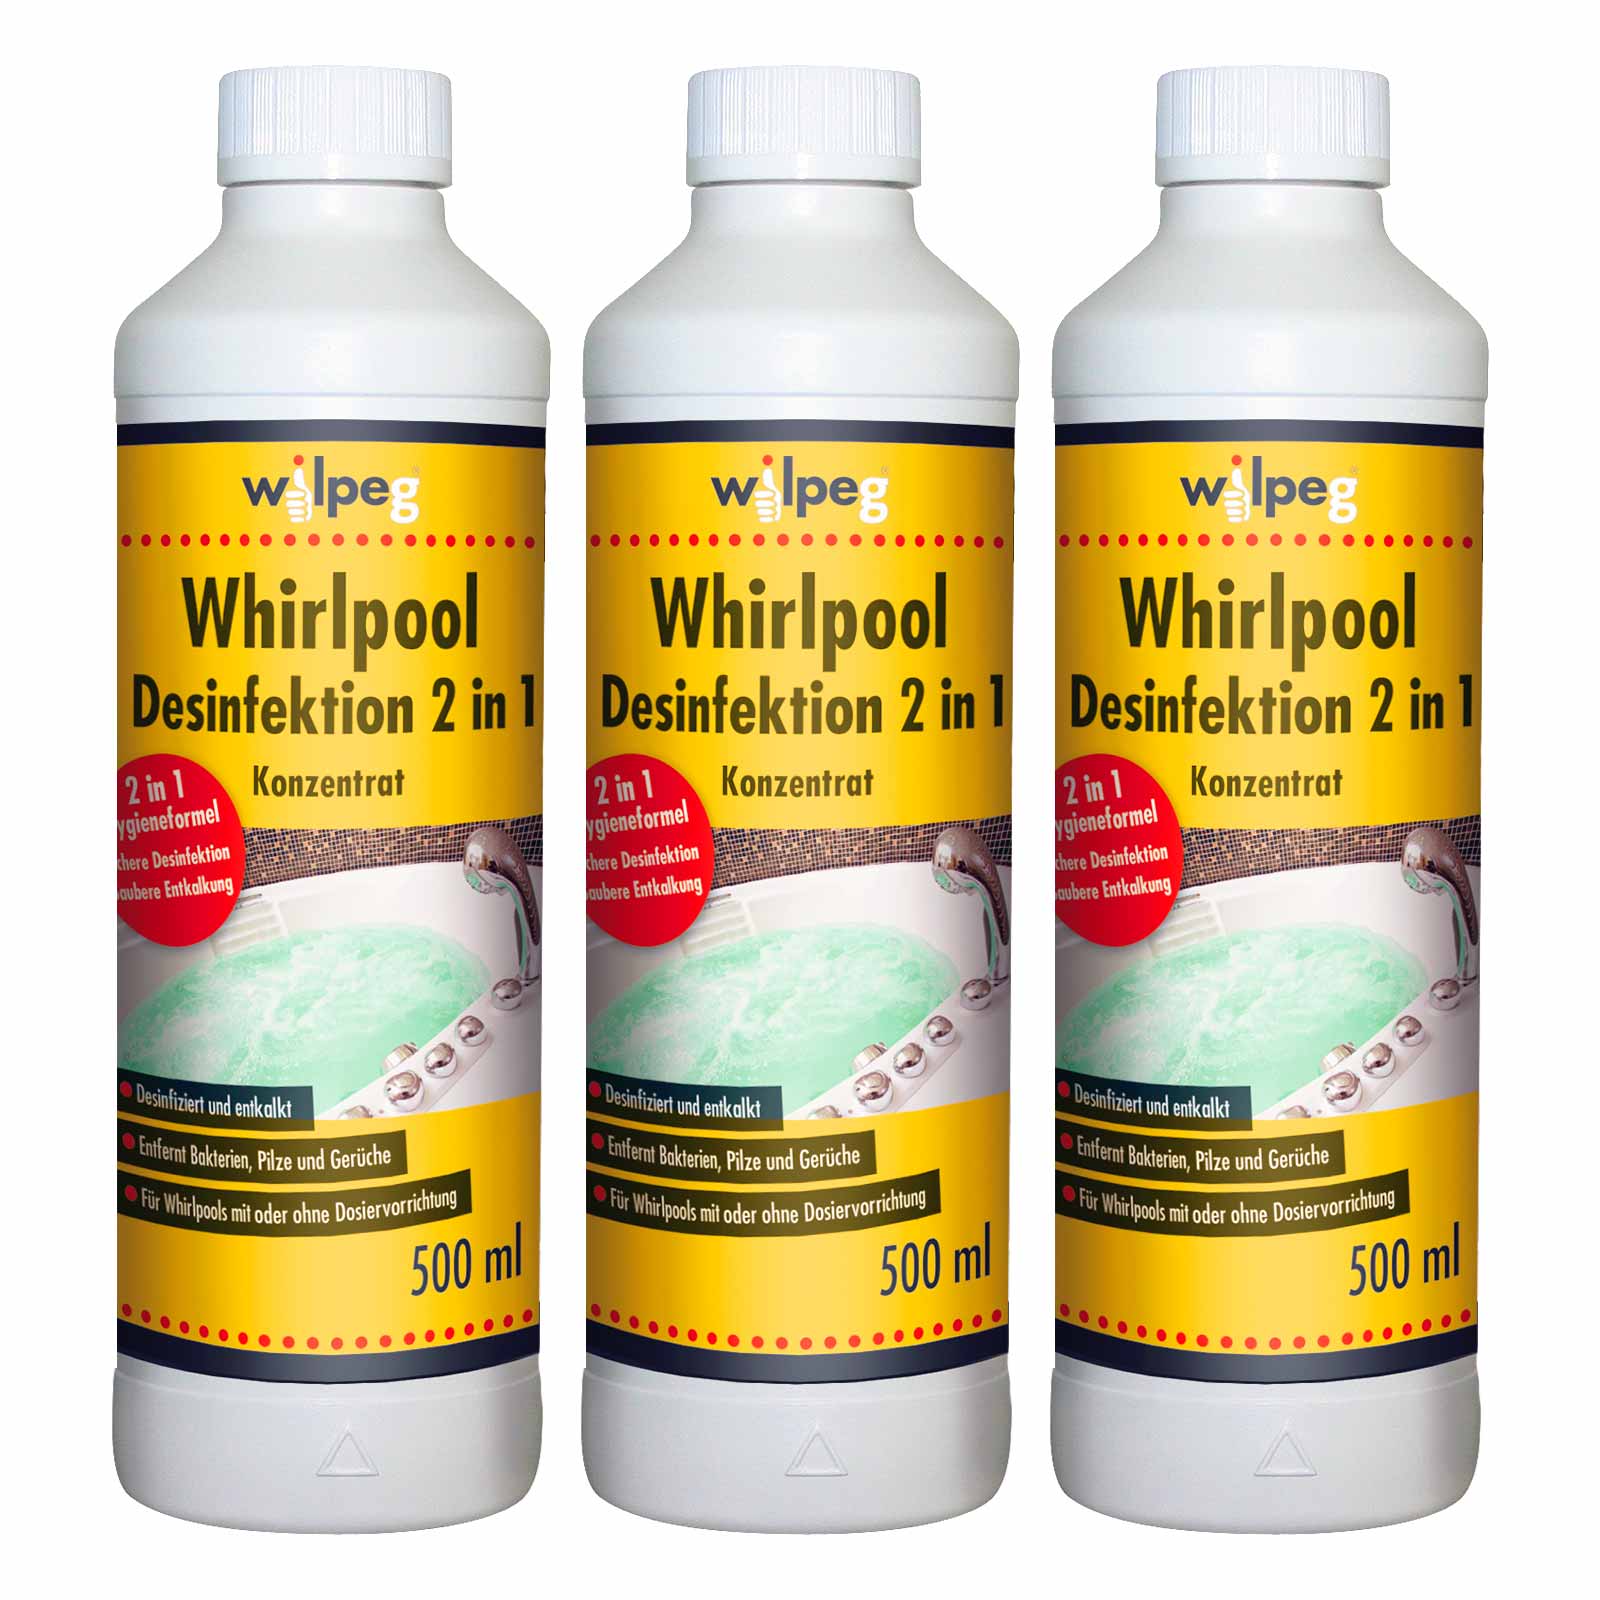 WILPEG Whirlpool Desinfektion x 500ml Konzentrat Kalkreiniger Hygienereiniger Menge:3 von Wilpeg